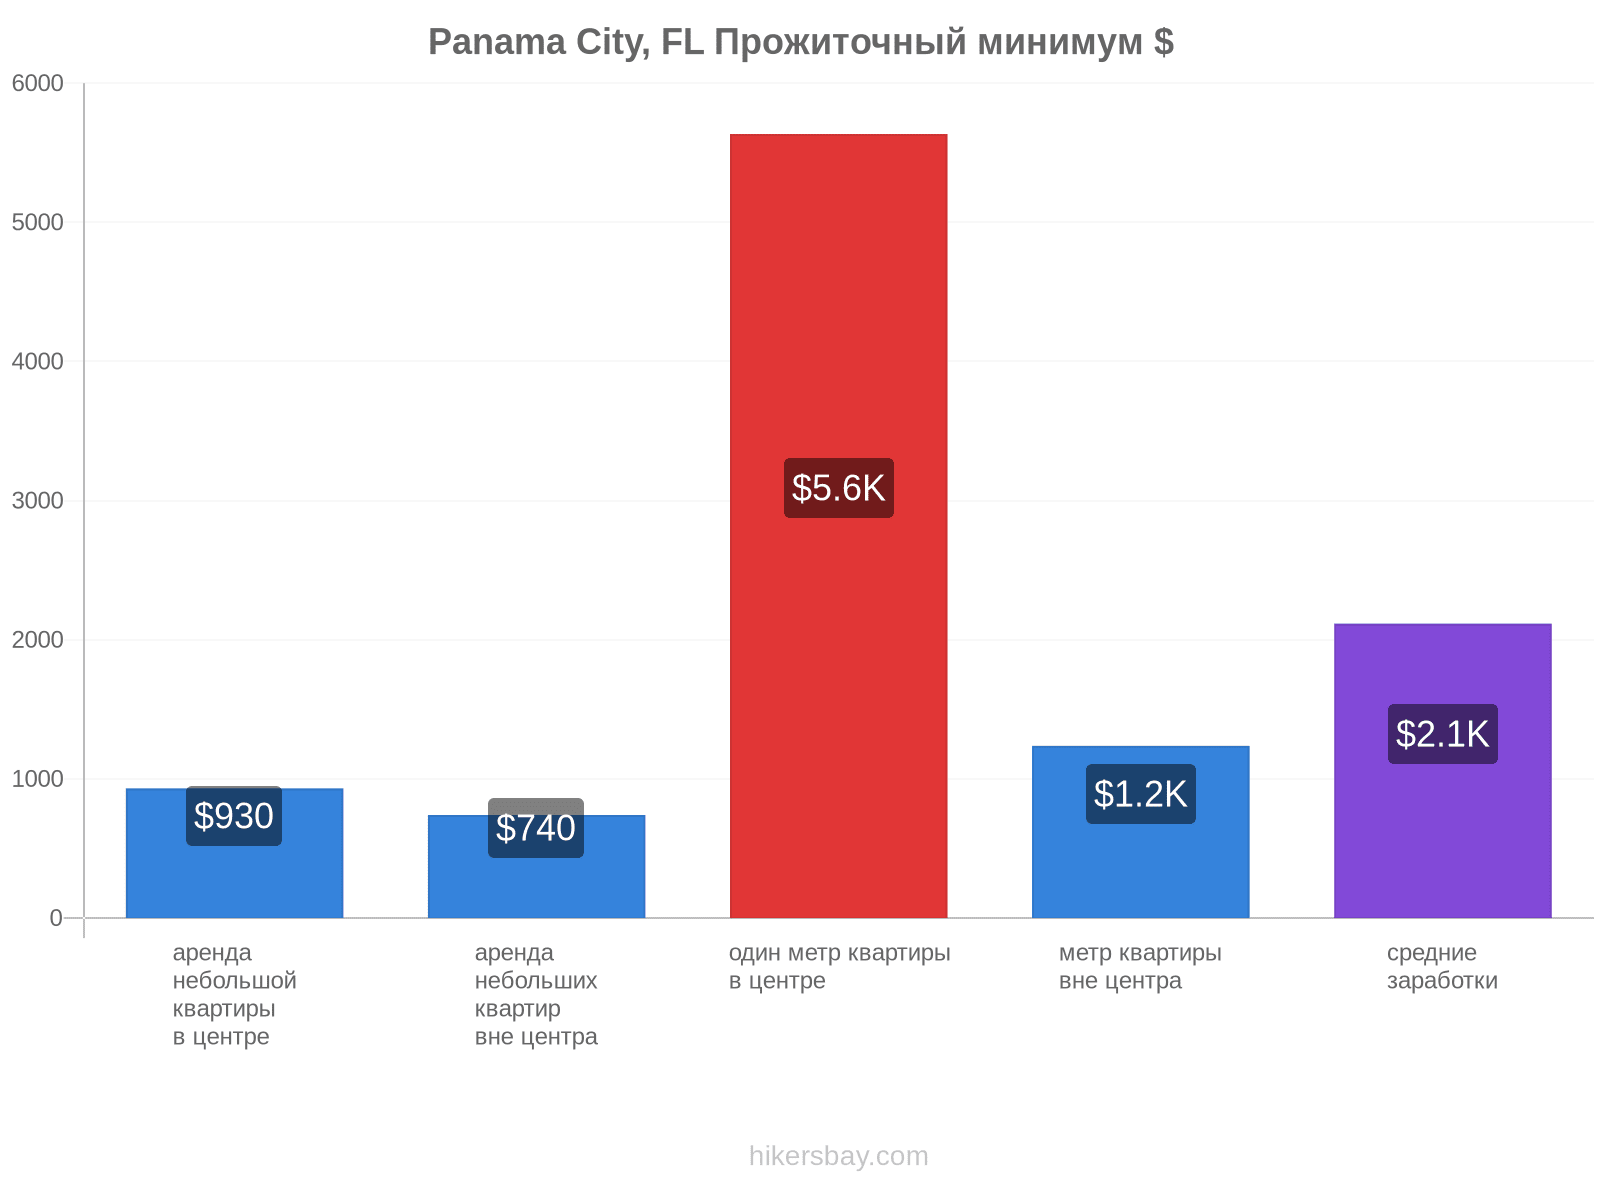 Panama City, FL стоимость жизни hikersbay.com